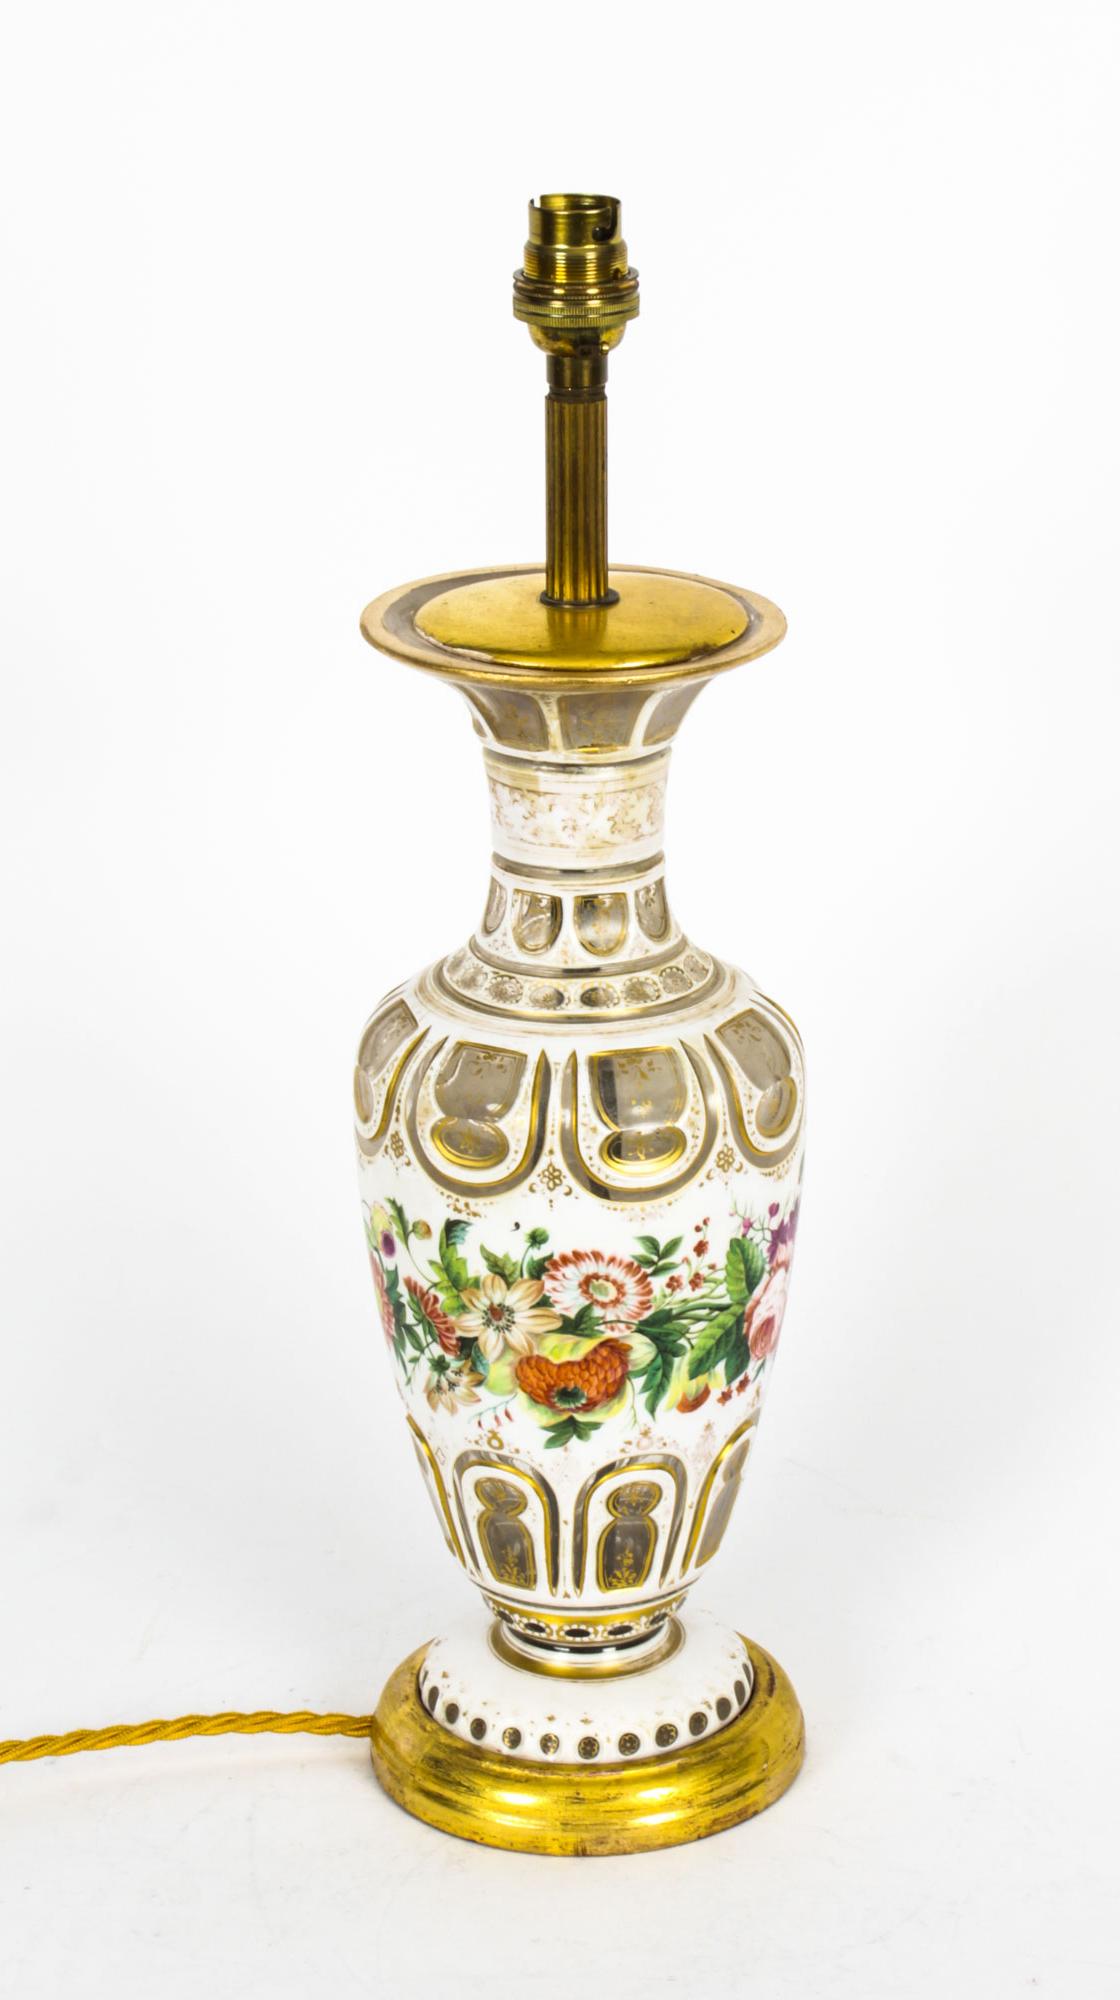 Il s'agit d'une élégante lampe de table victorienne en verre blanc opaque superposé, datant d'environ 1860.
 
Cet élégant vase de forme balustre a été converti plus tard en lampe électrique. Il présente un décor de panneaux découpés, décorés